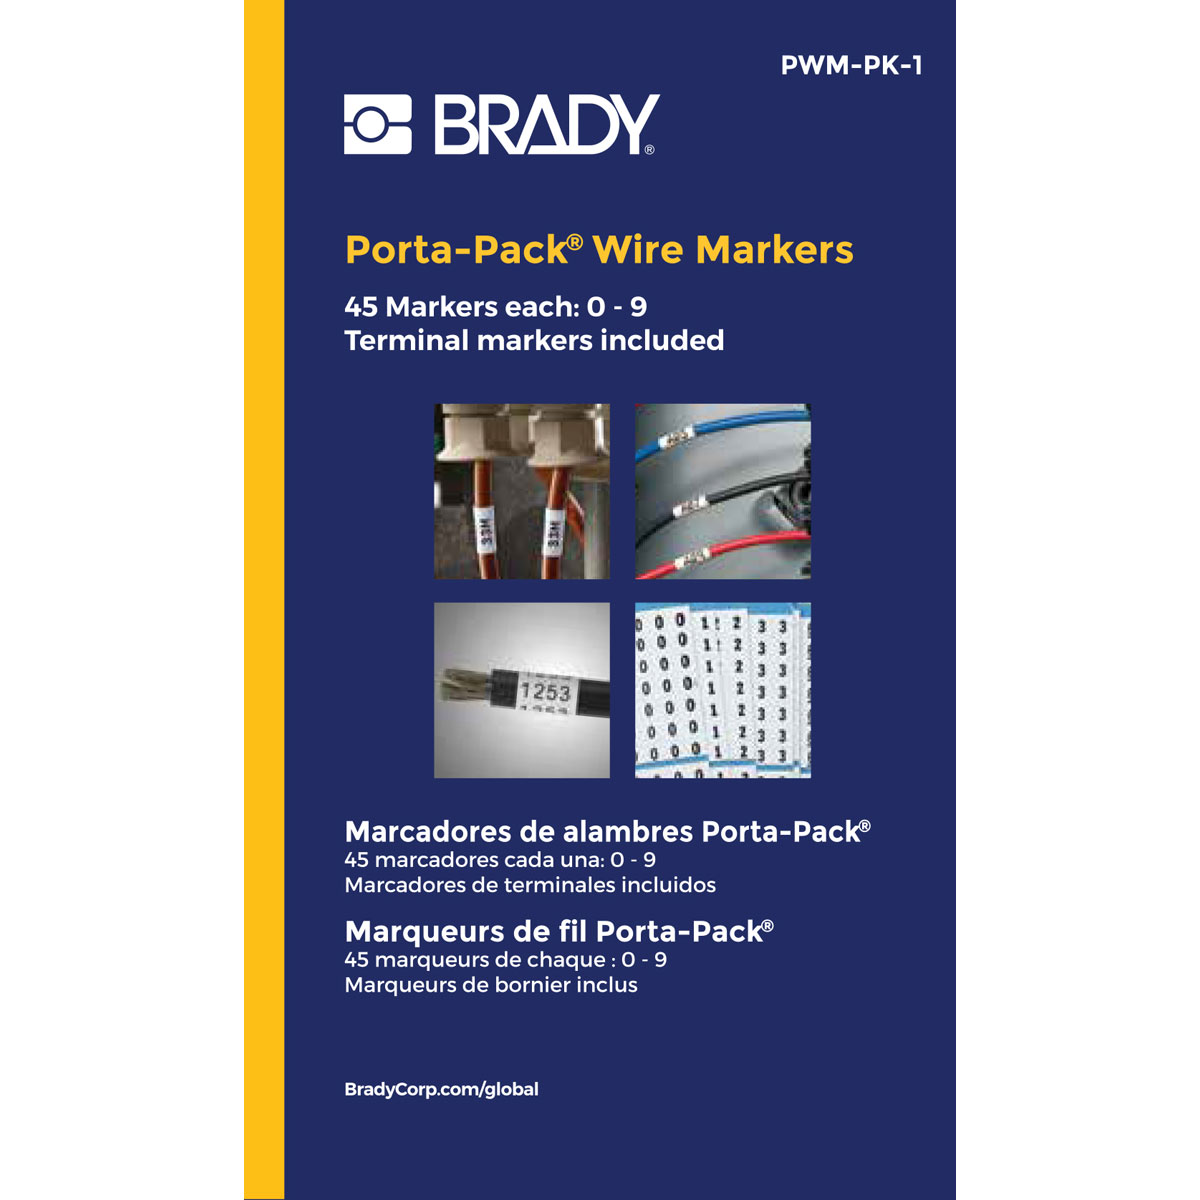 Brady PWM-PK-1 1-45 & PWM-PK-1 0-9  Porta-Pak Wire Markers Book Booklet Legend 5053184706331